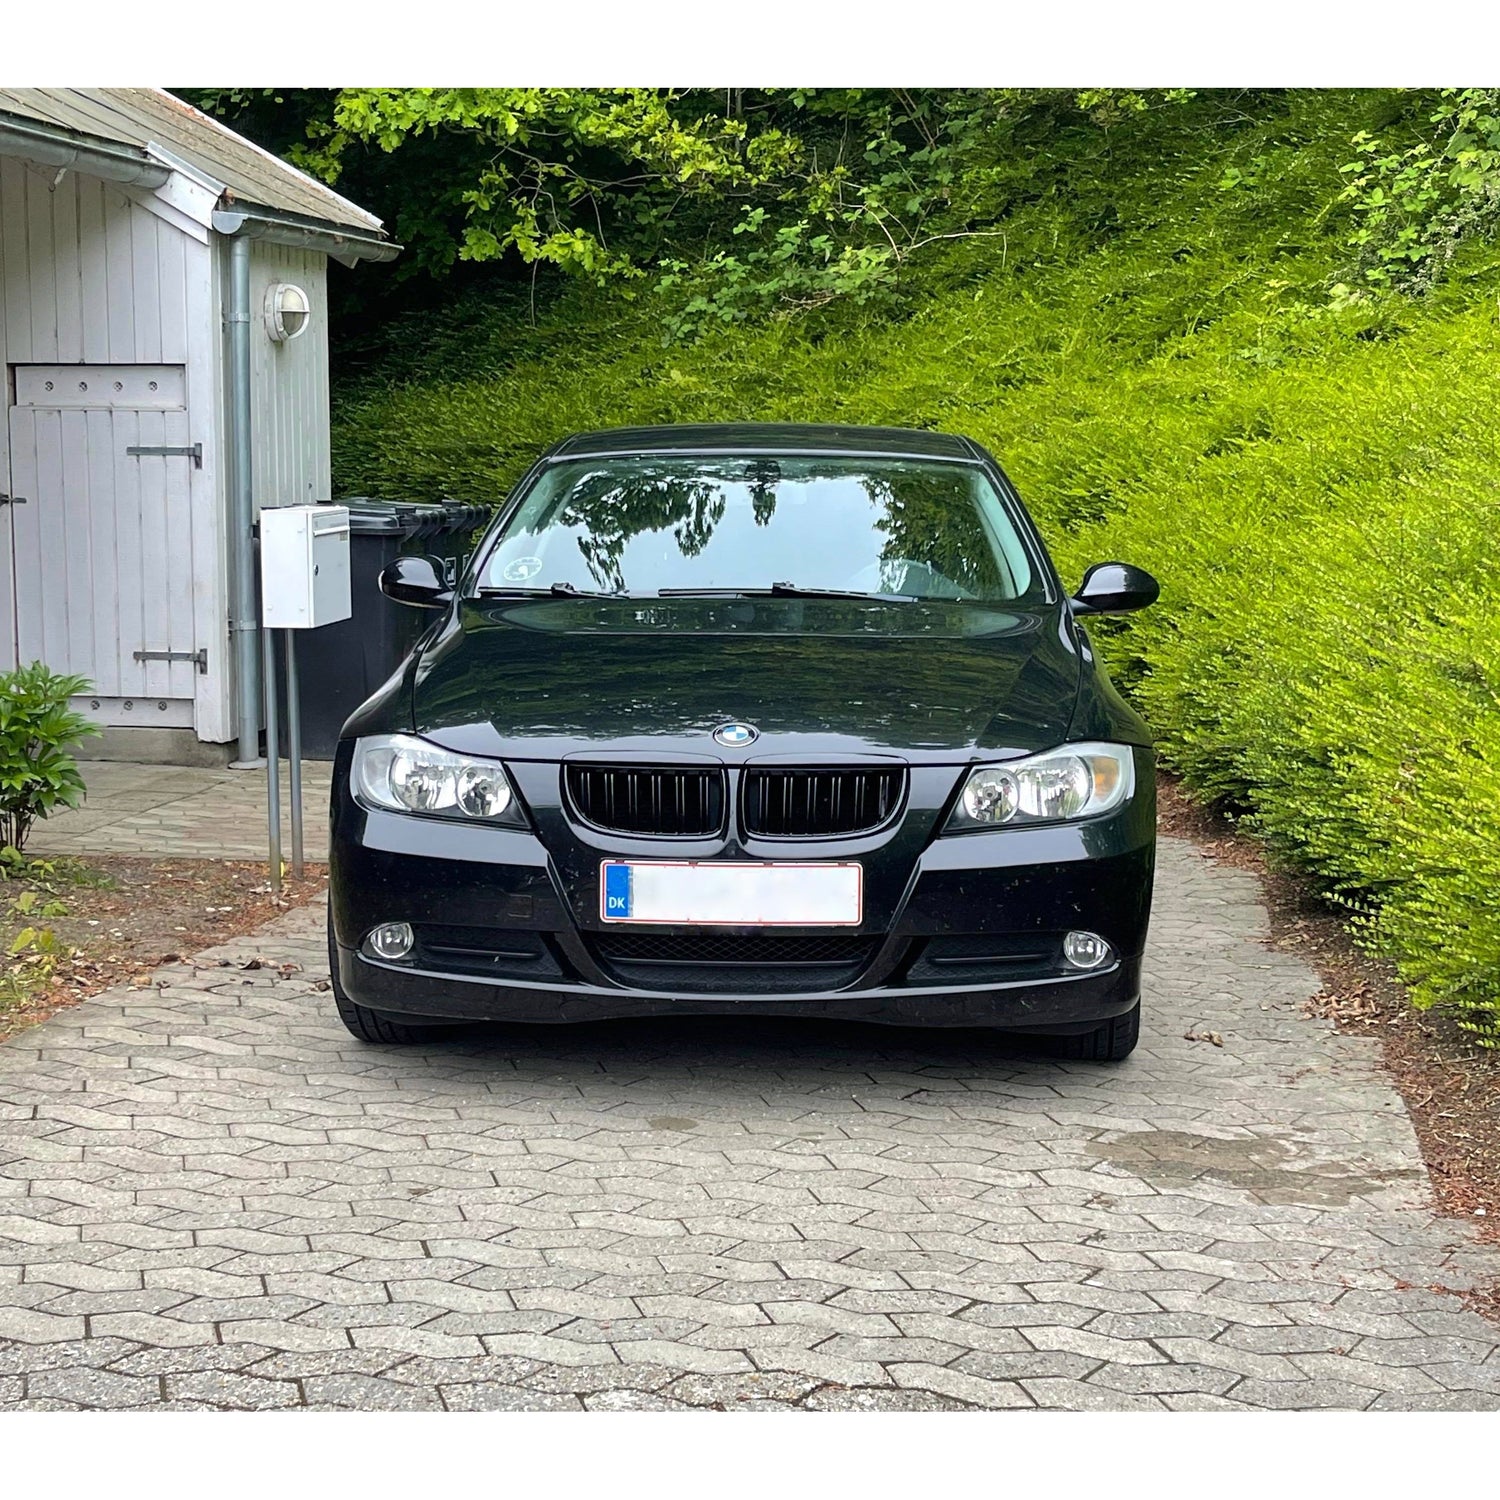 BMW E90 frontgrill nyrer - Sort højglans - Komplet sæt - BilligStyling